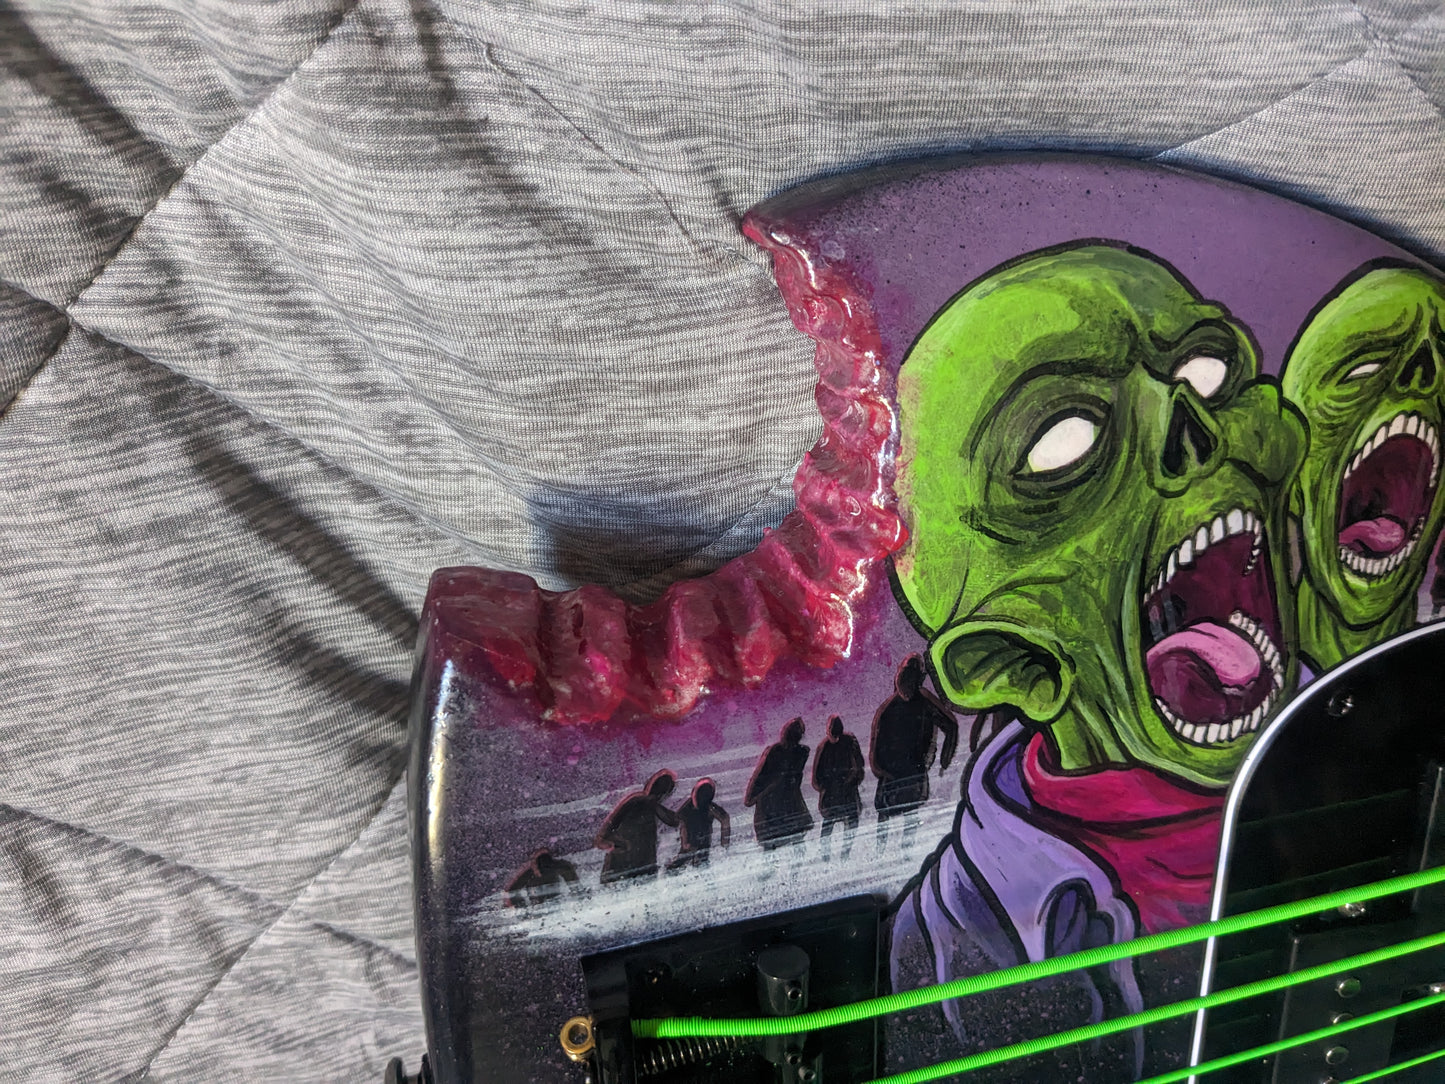 "Zombie Bite" Custom P Bass